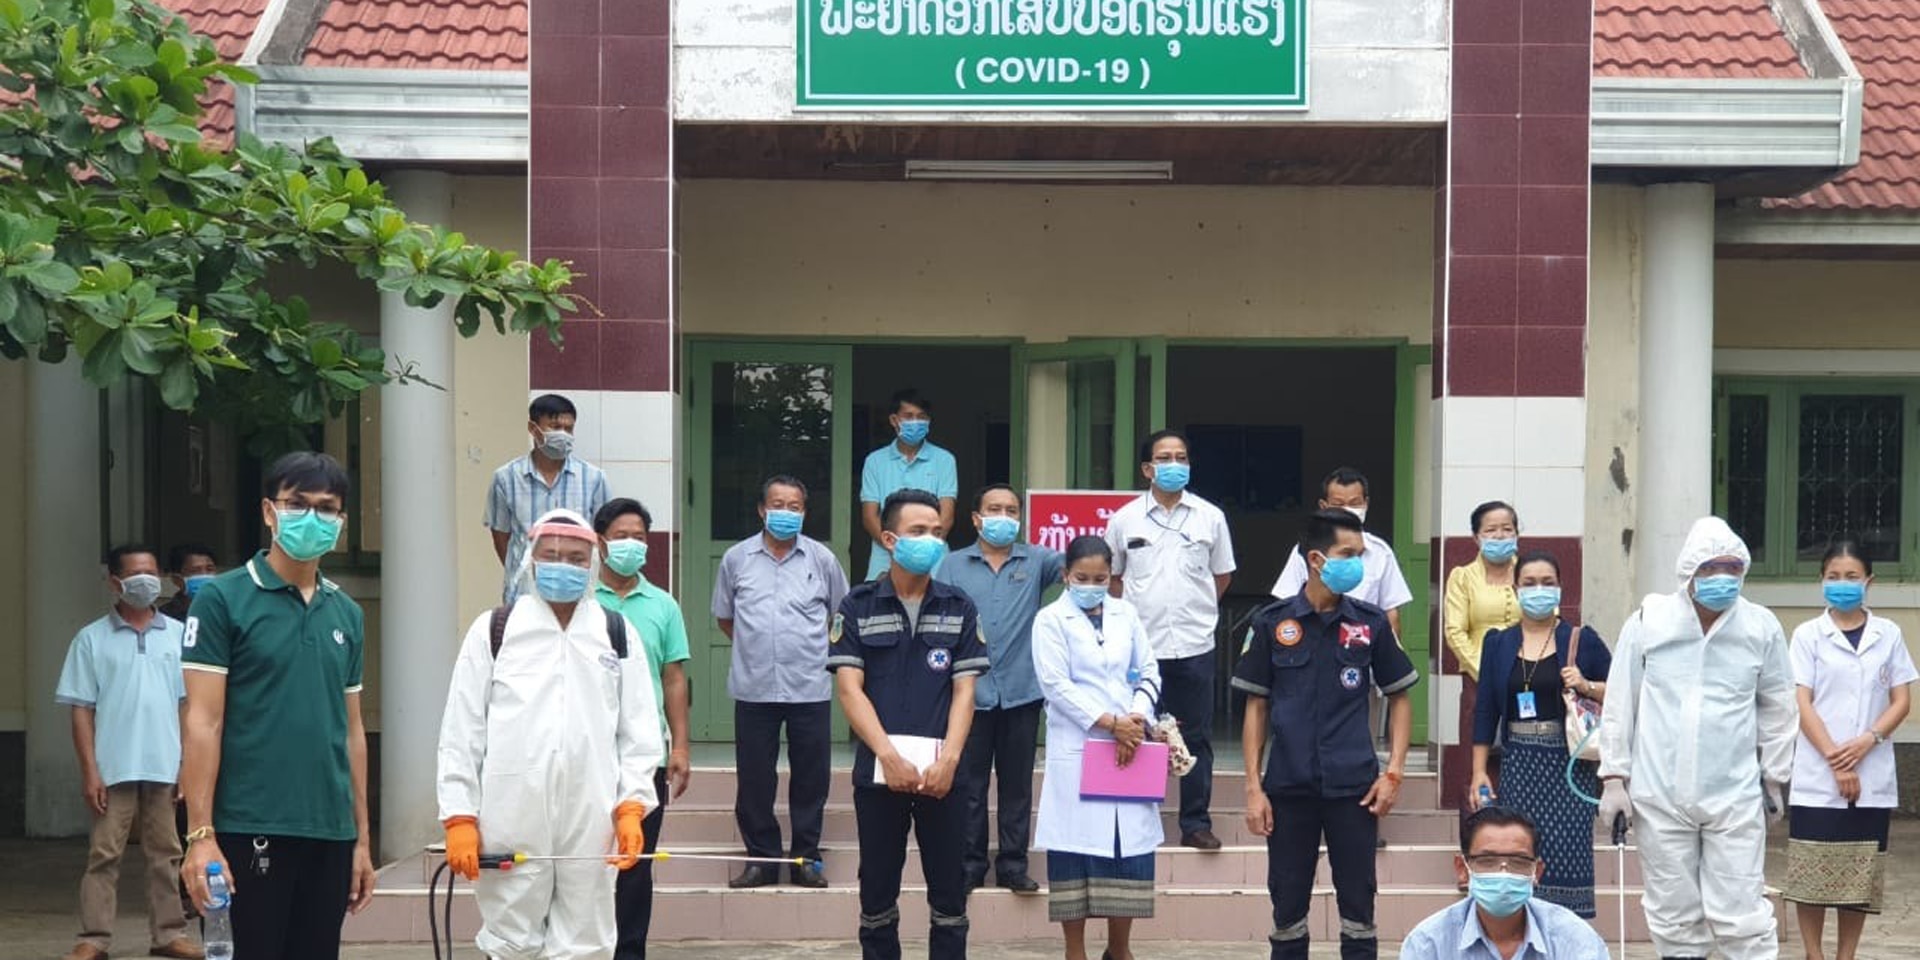 Personale di un ospedale del Laos con mascherine di protezione, davanti all’entrata del padiglione COVID-19. 